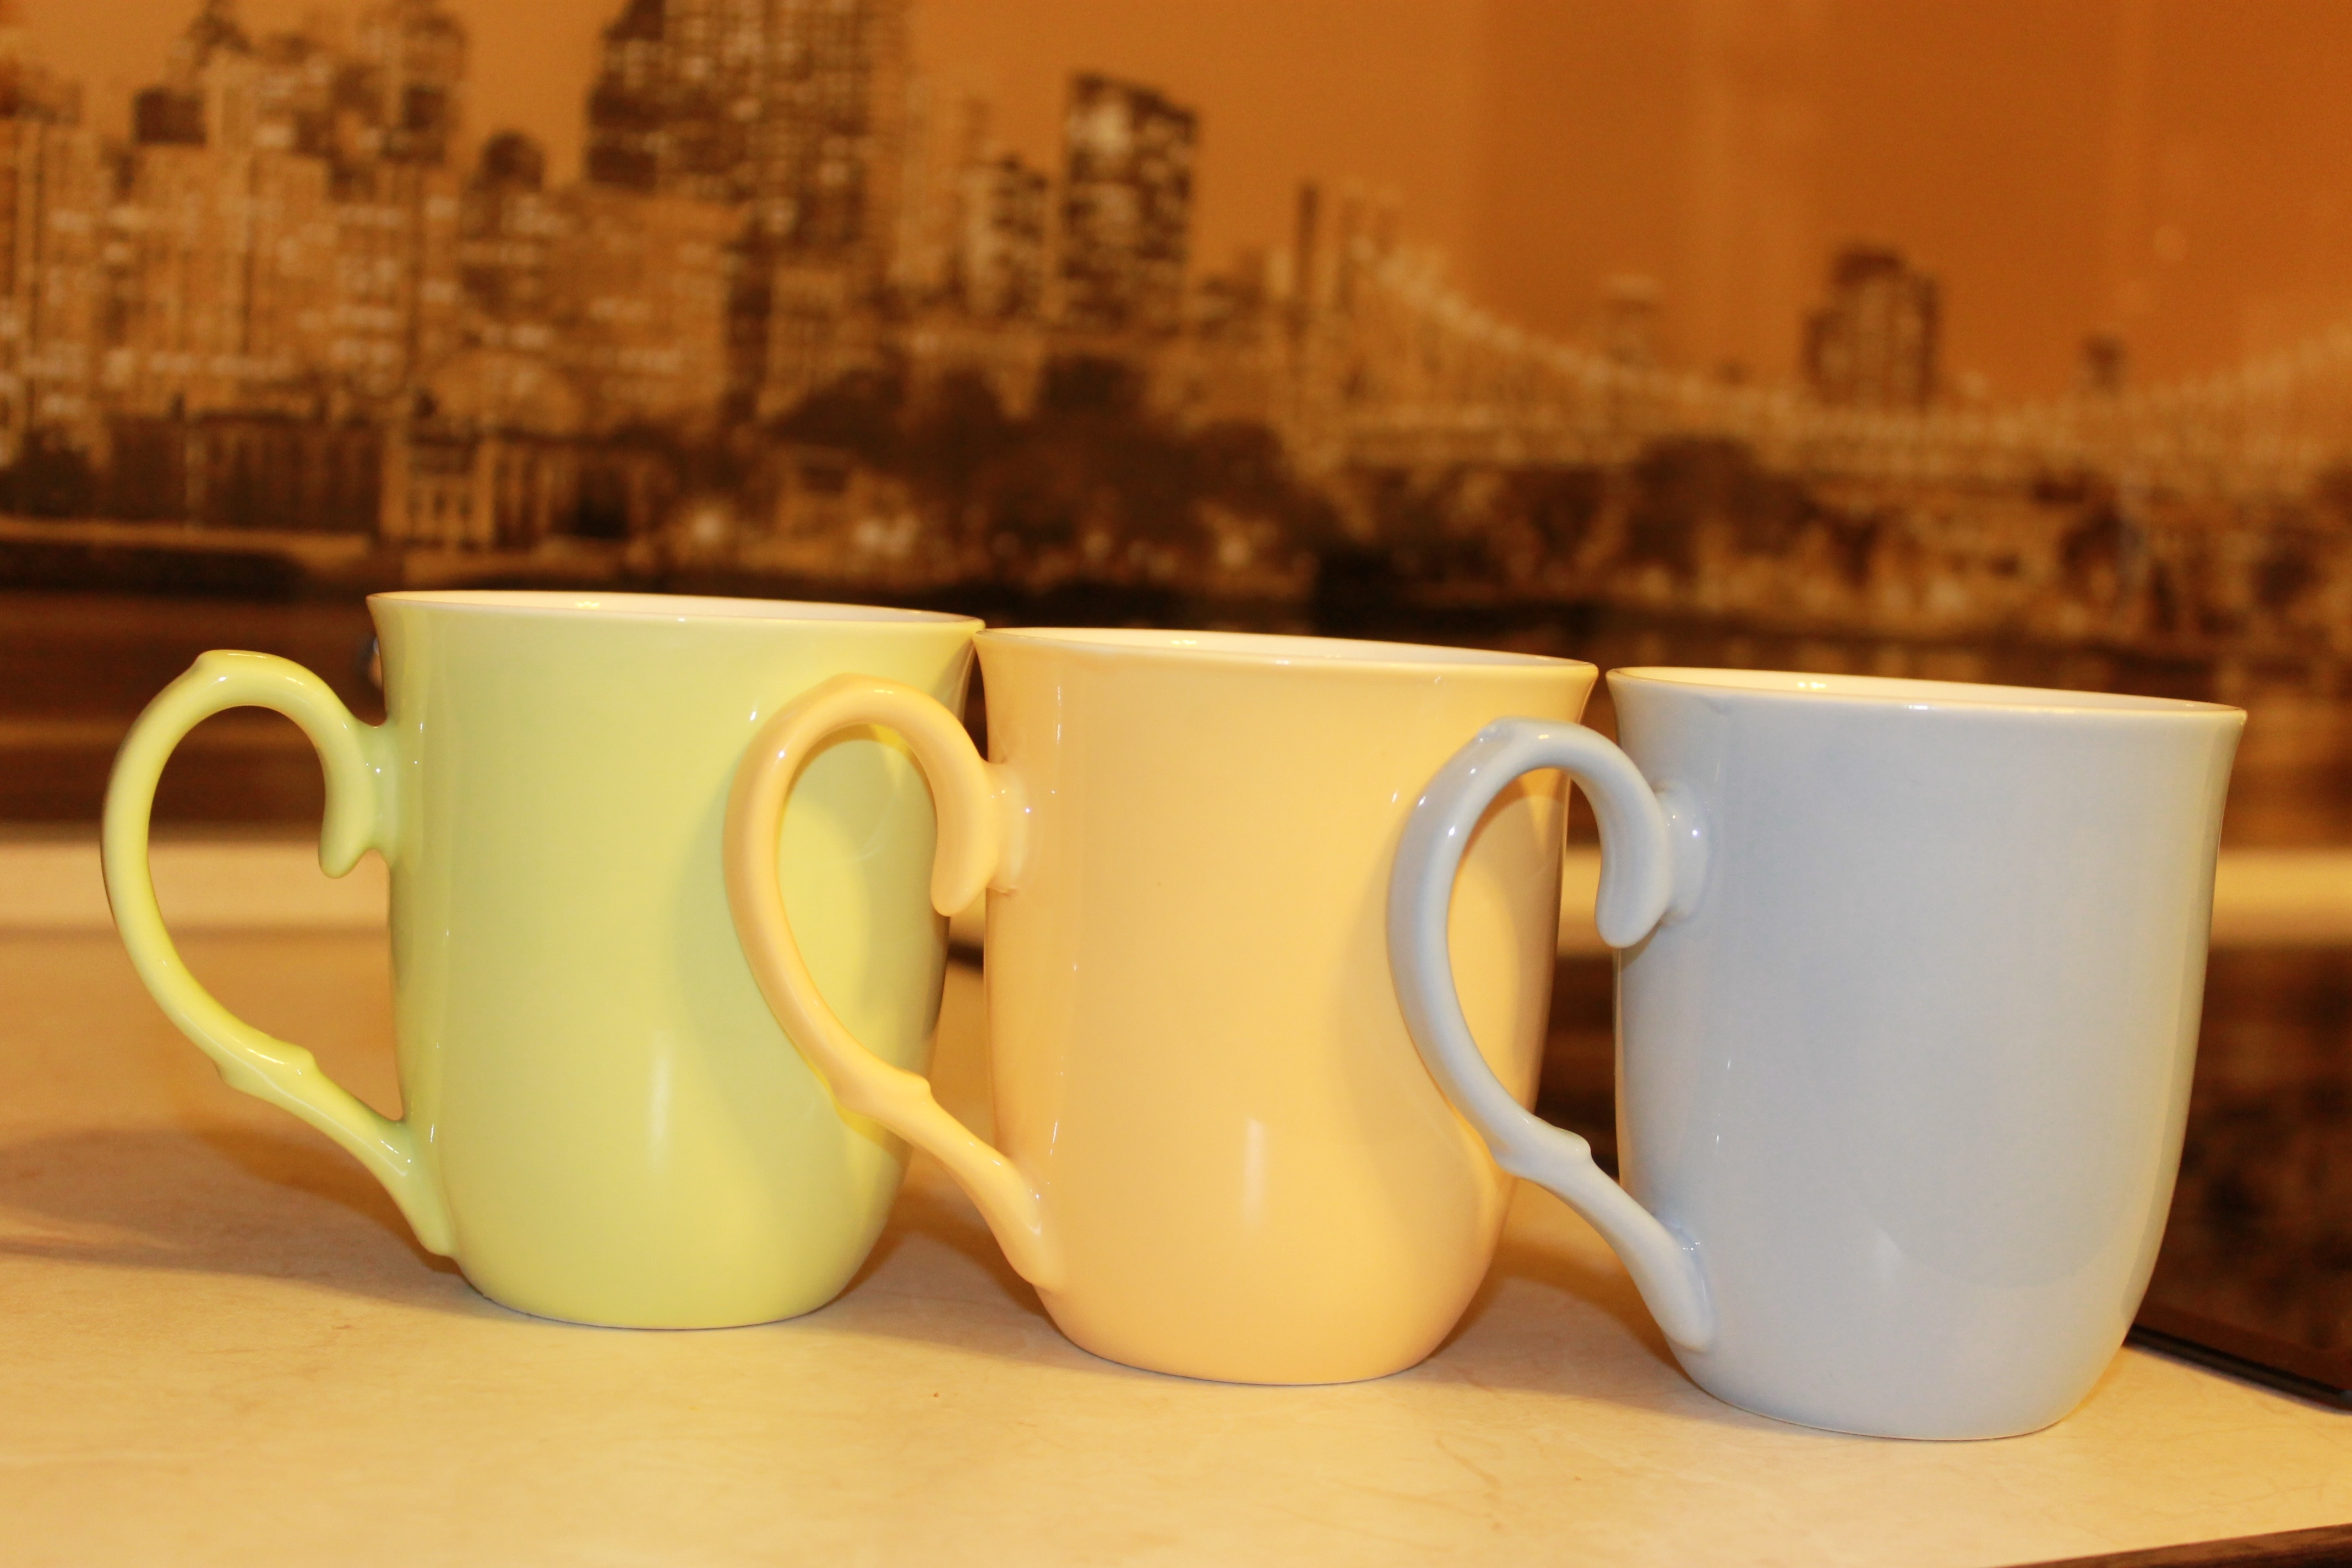 green yellow and gray ceramic mugs